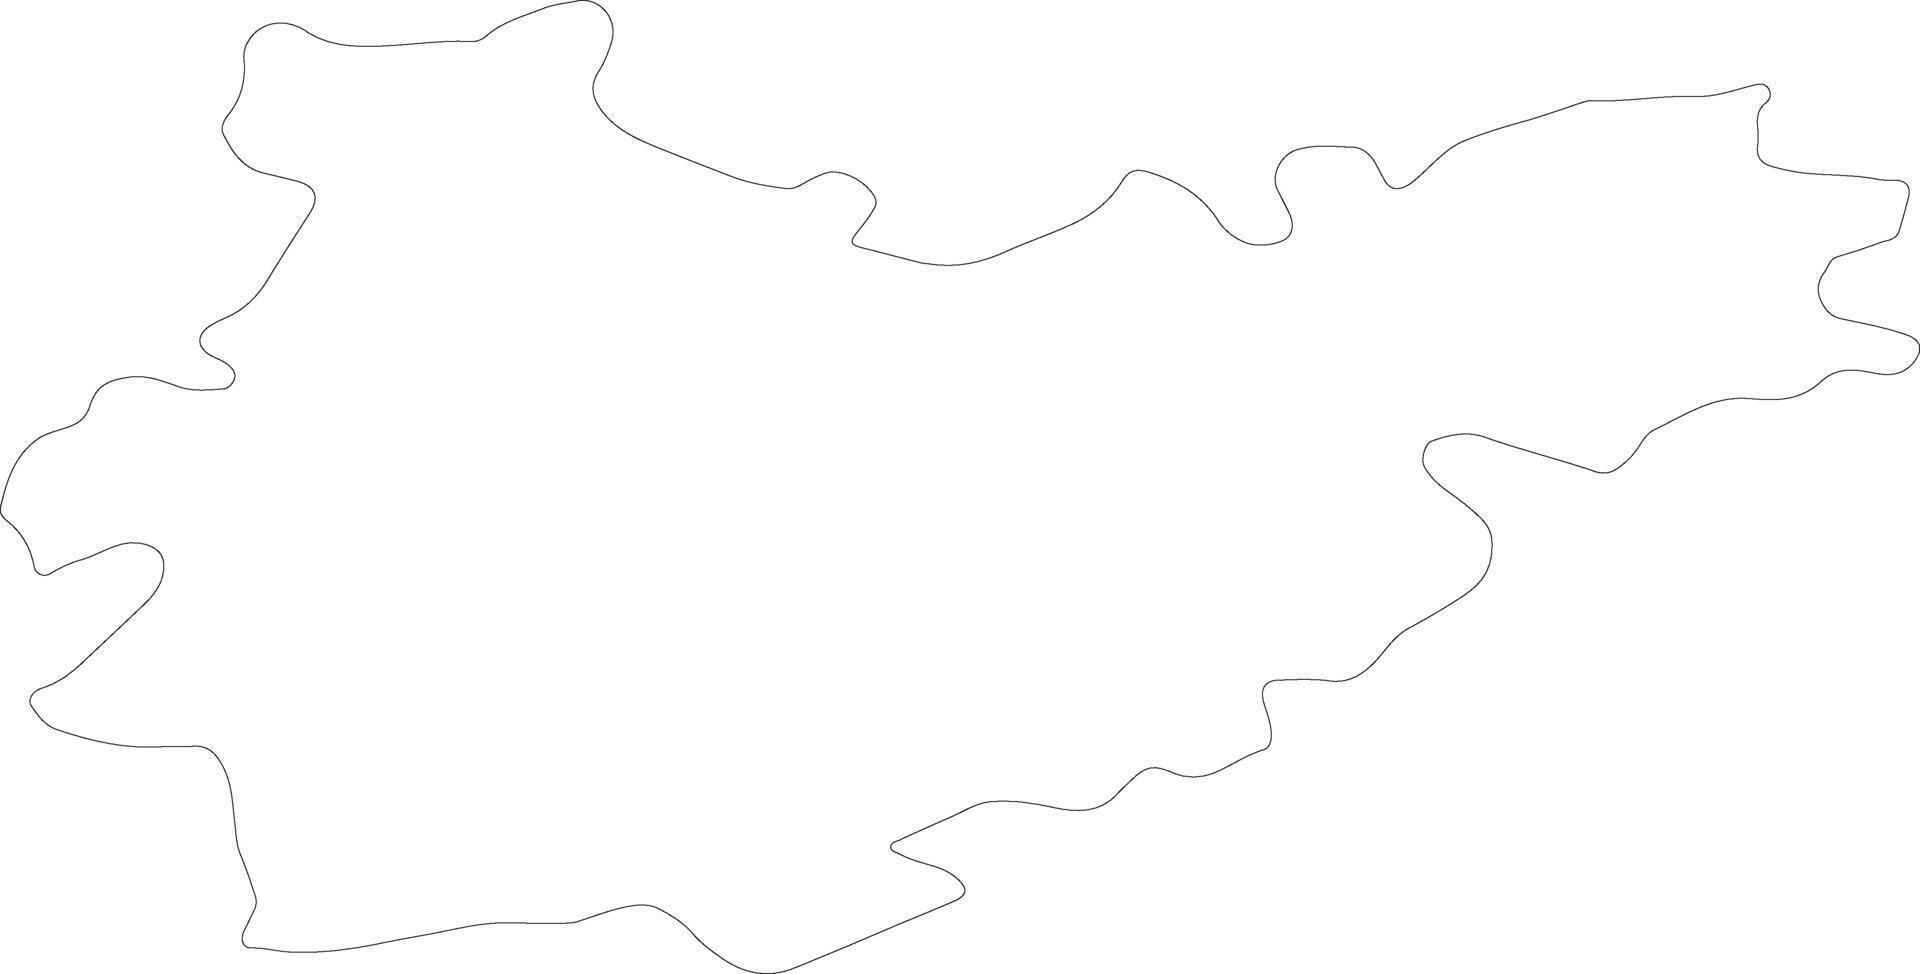 Tarn-et-Garonne France outline map vector